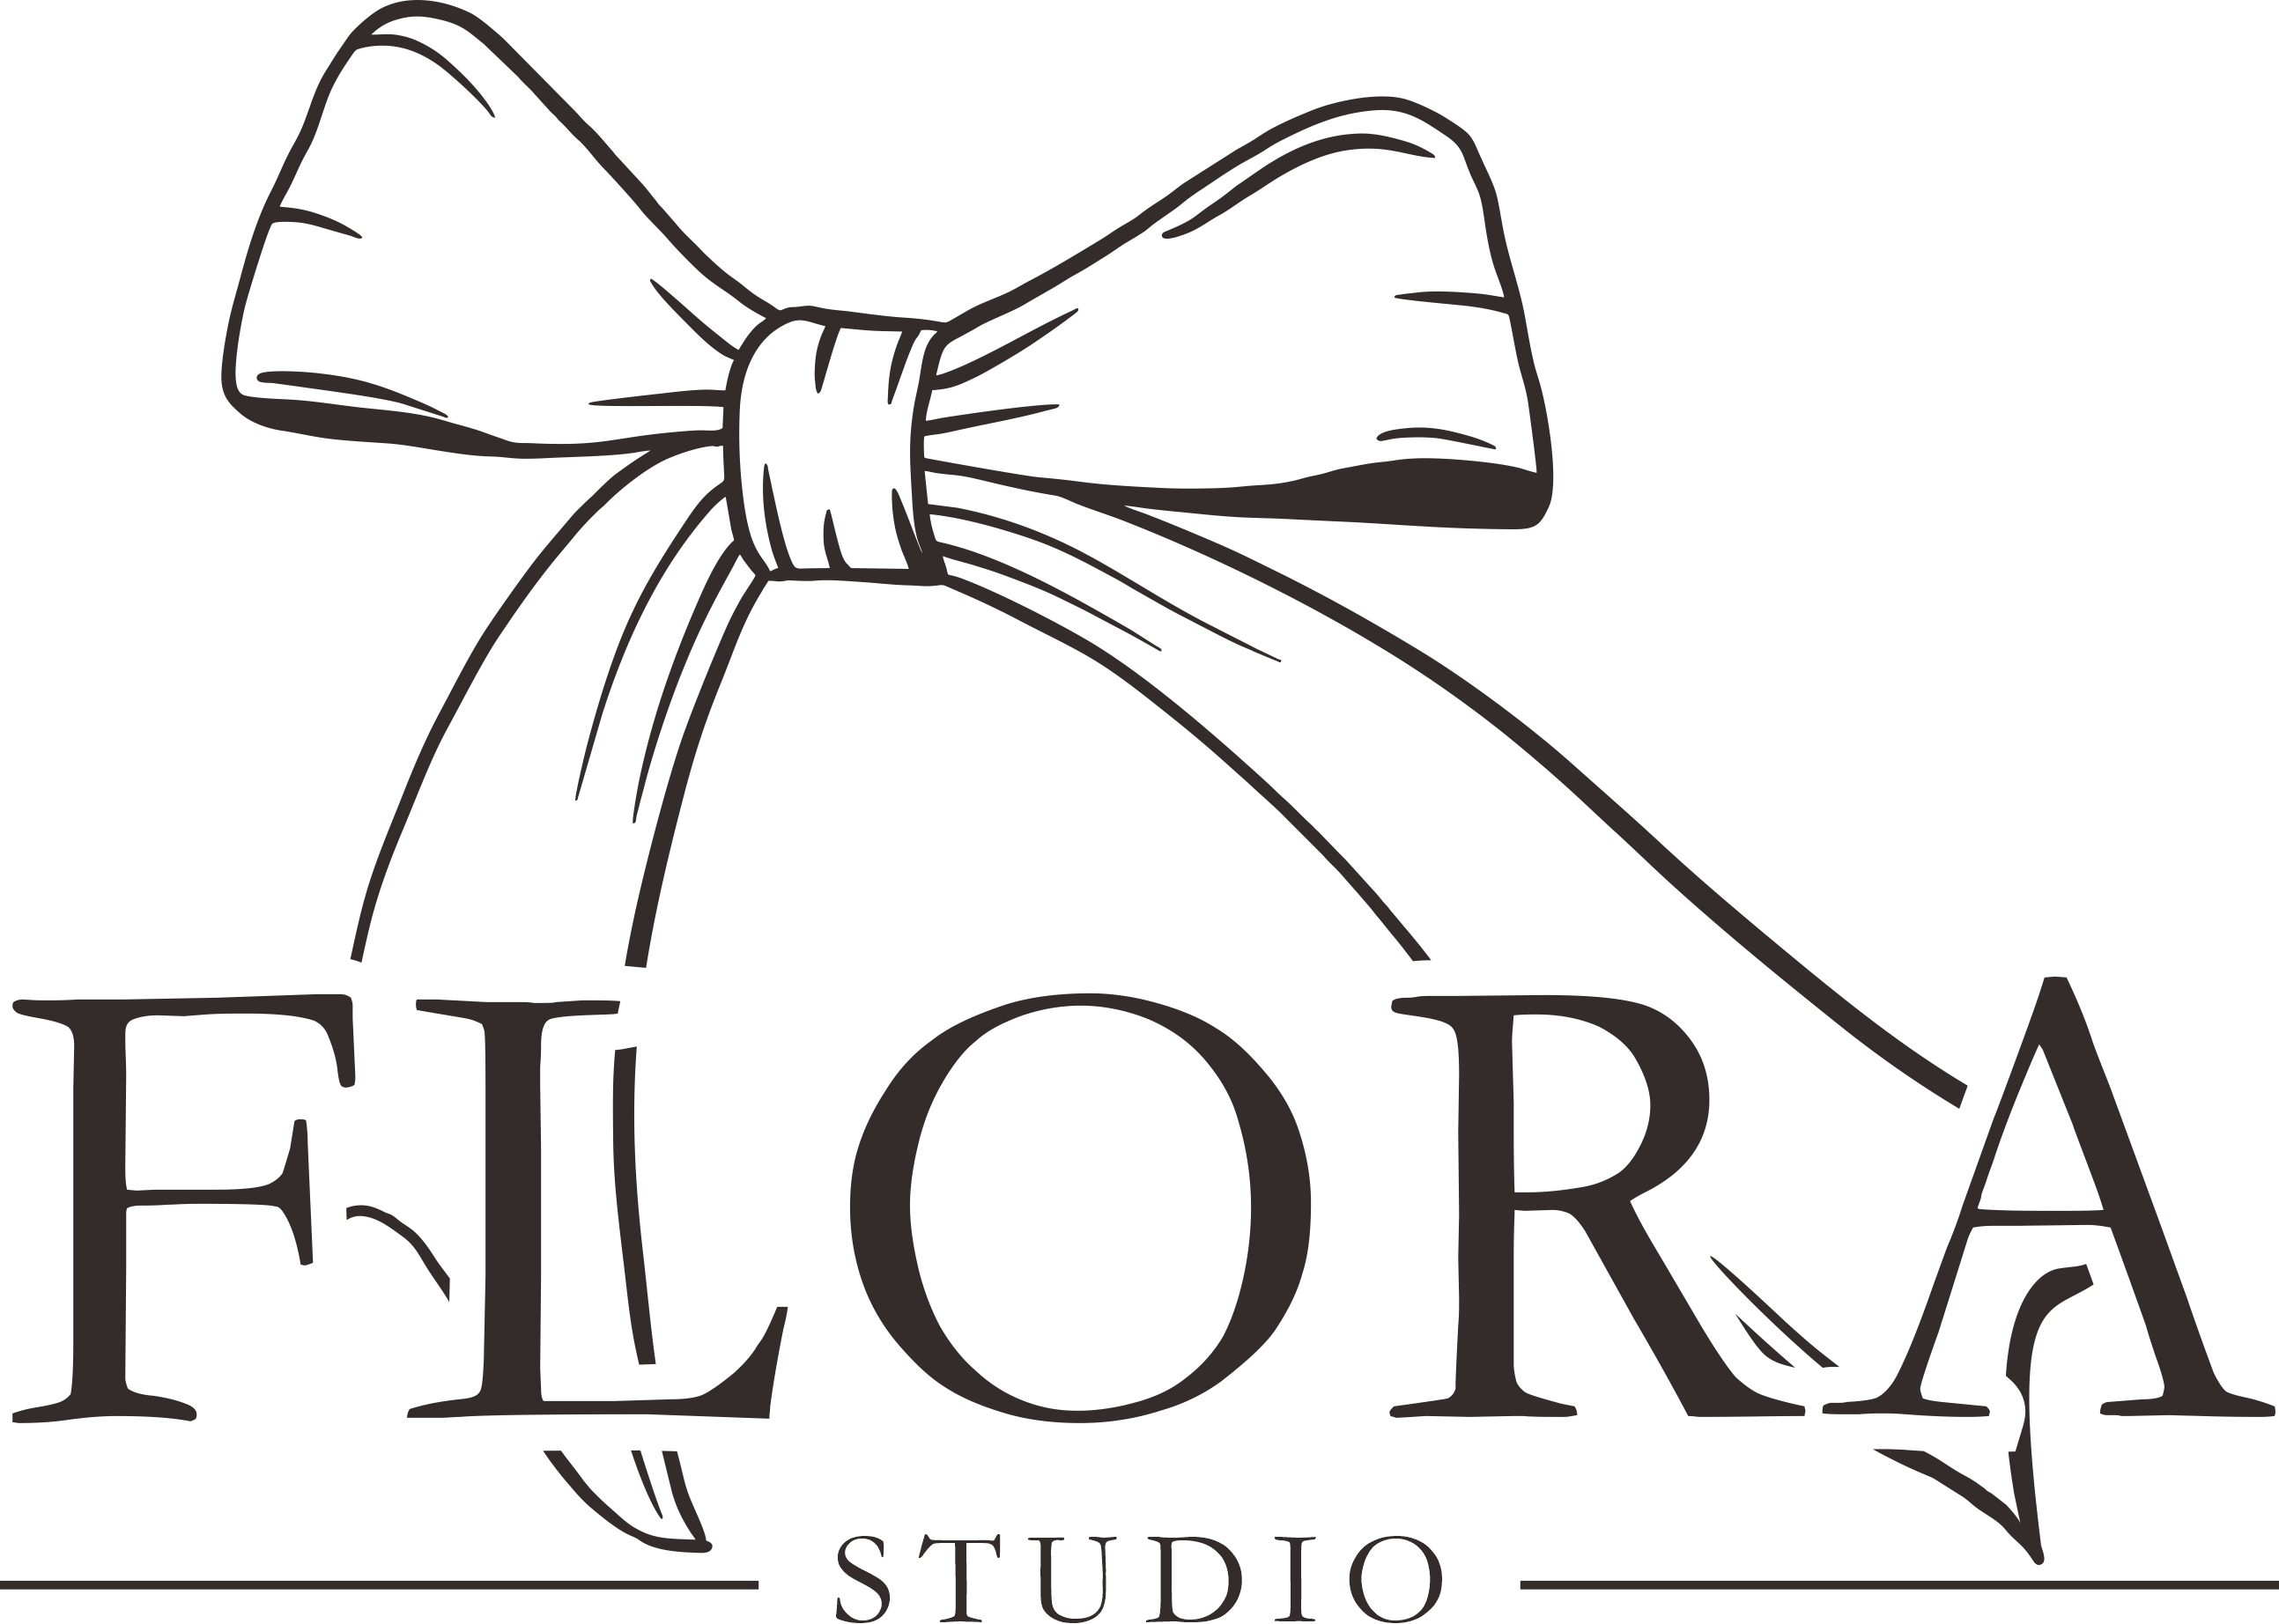 Flora Studio